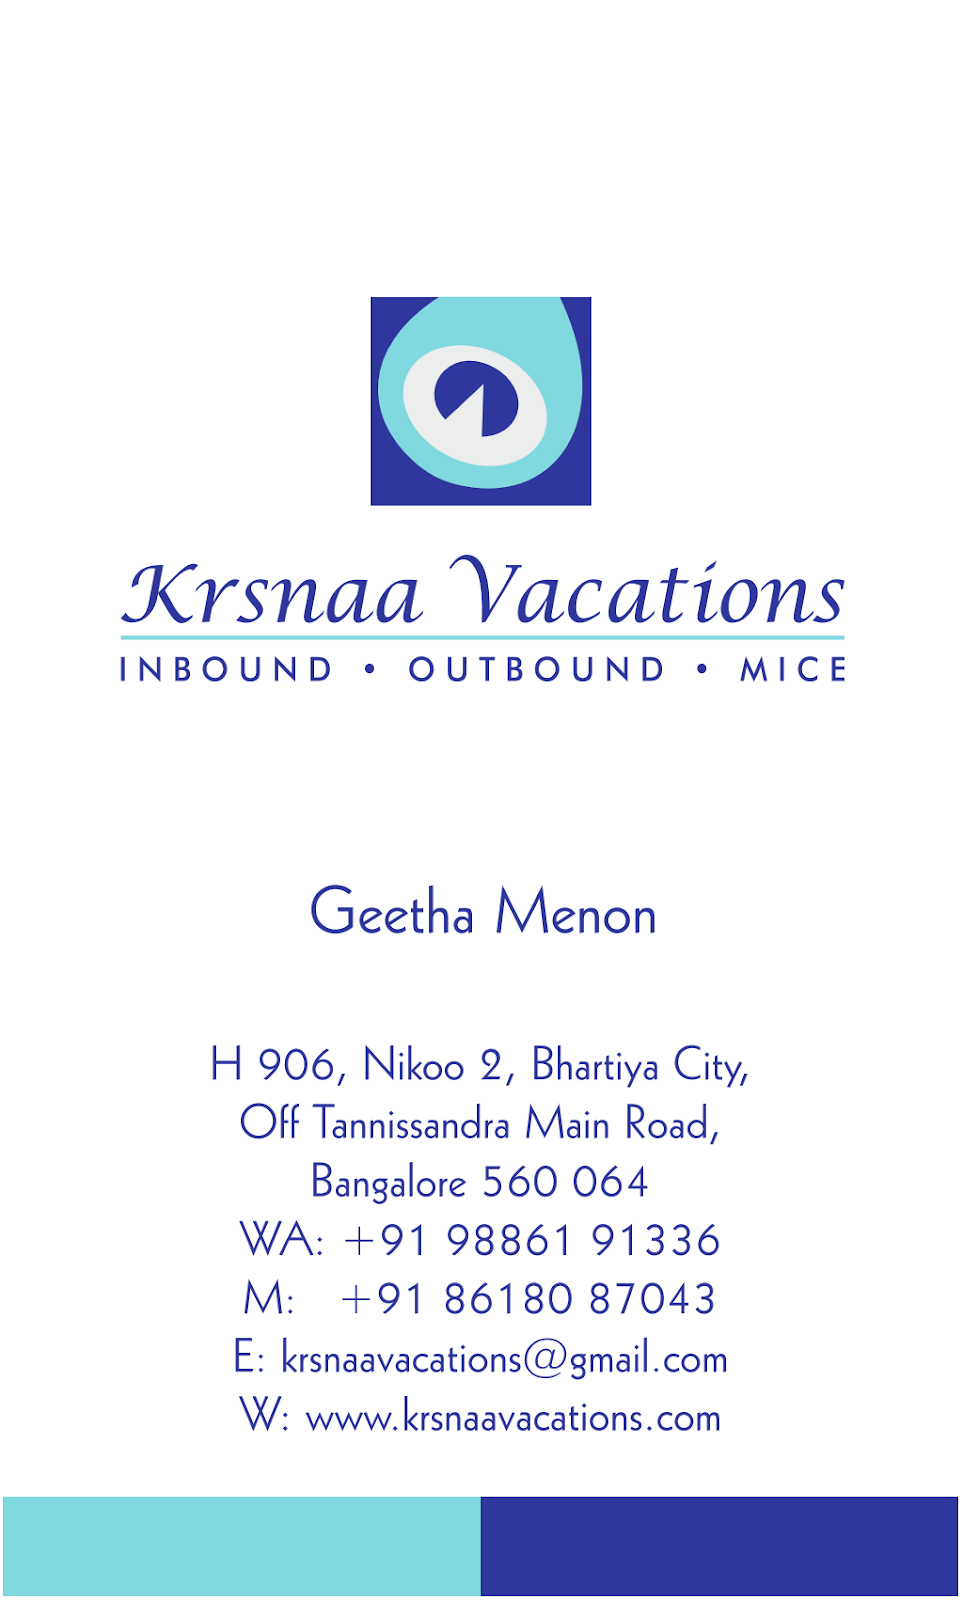 Krshnaa Vacations